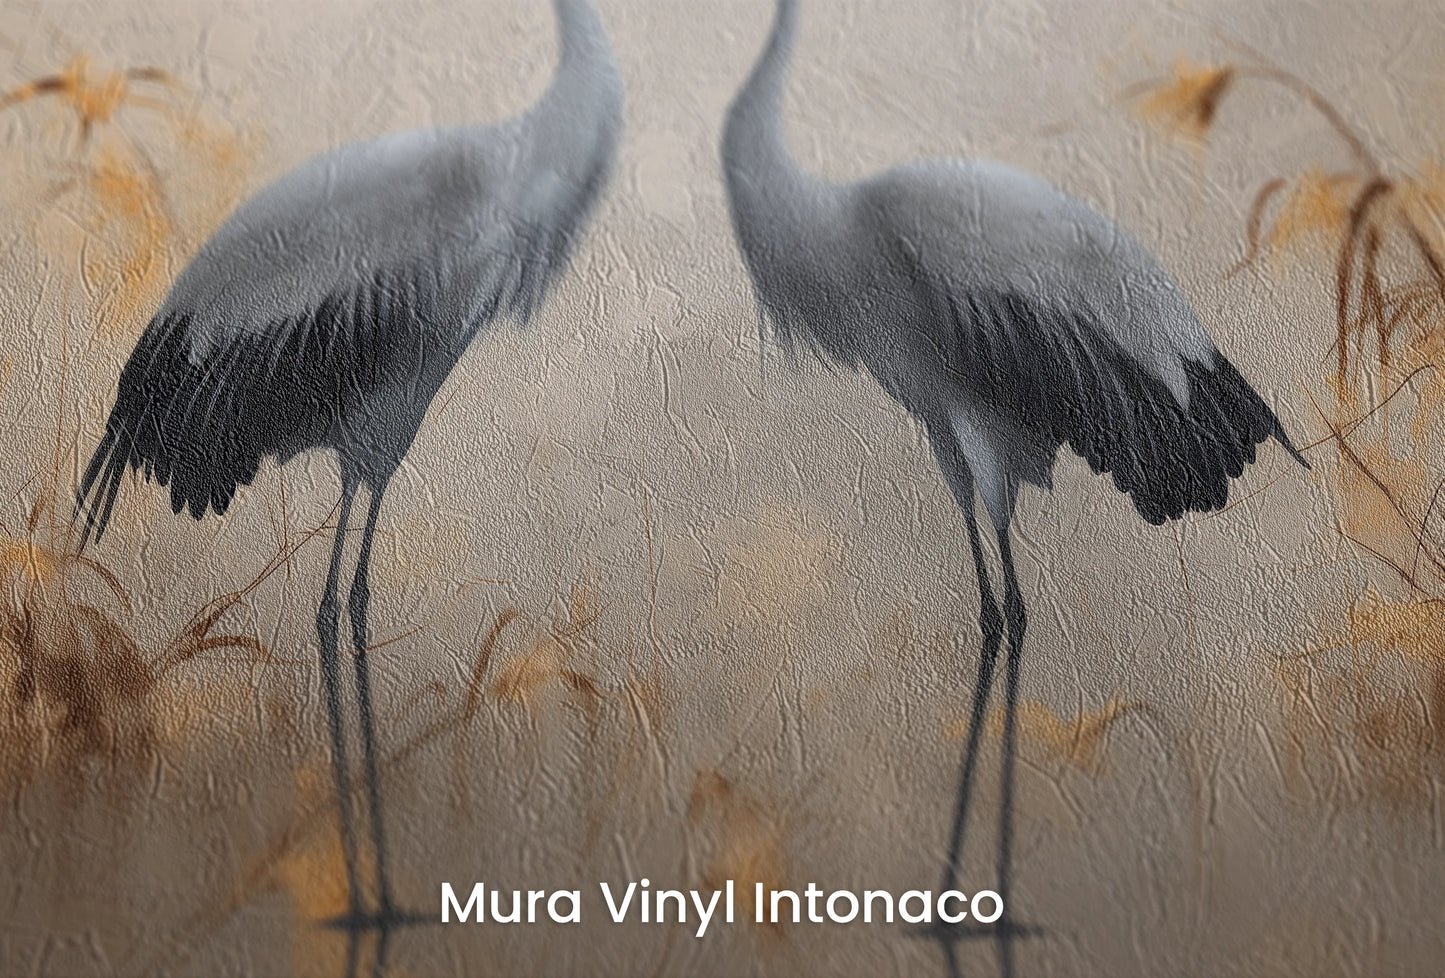 Zbliżenie na artystyczną fototapetę o nazwie Misty Silhouettes na podłożu Mura Vinyl Intonaco - struktura tartego tynku.